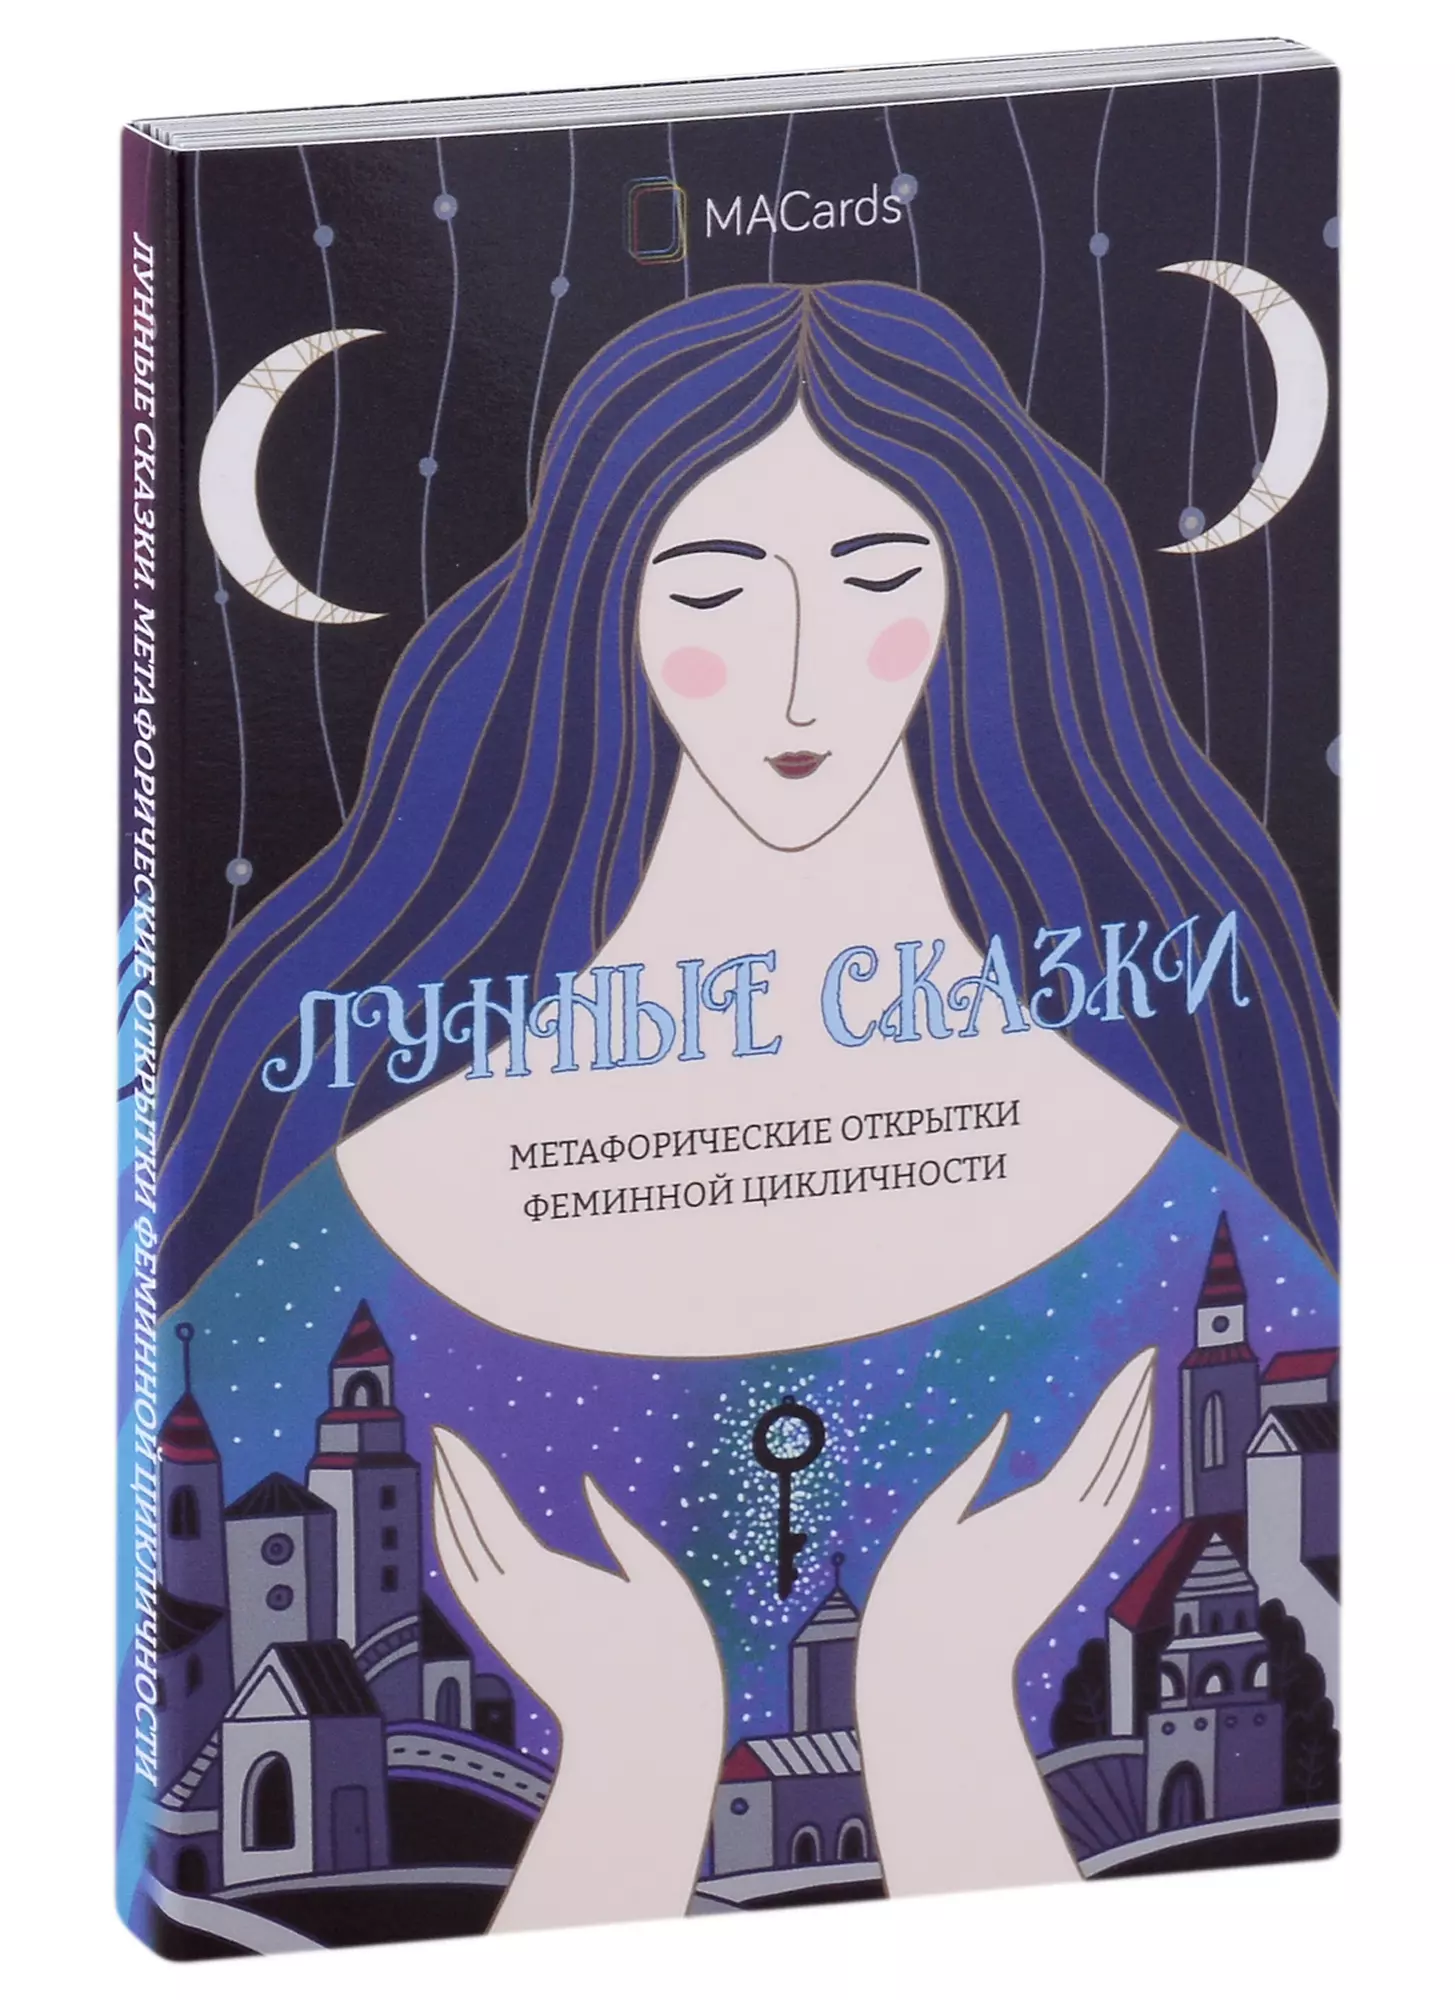 Хомякова Мария - Метафорические открытки феминной цикличности «Лунные сказки»